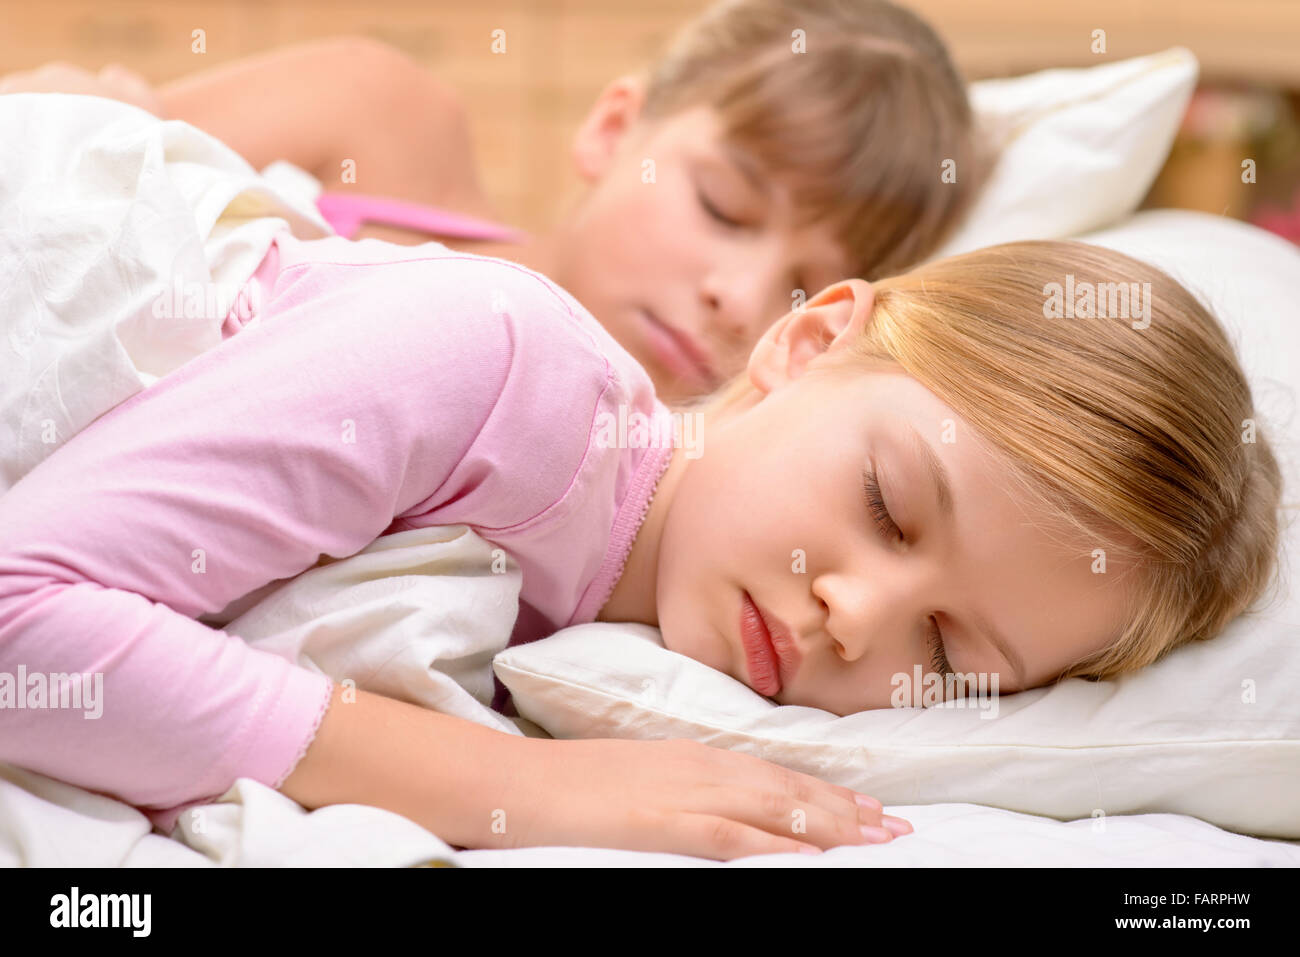 маленькая девочка спит порно фото 16